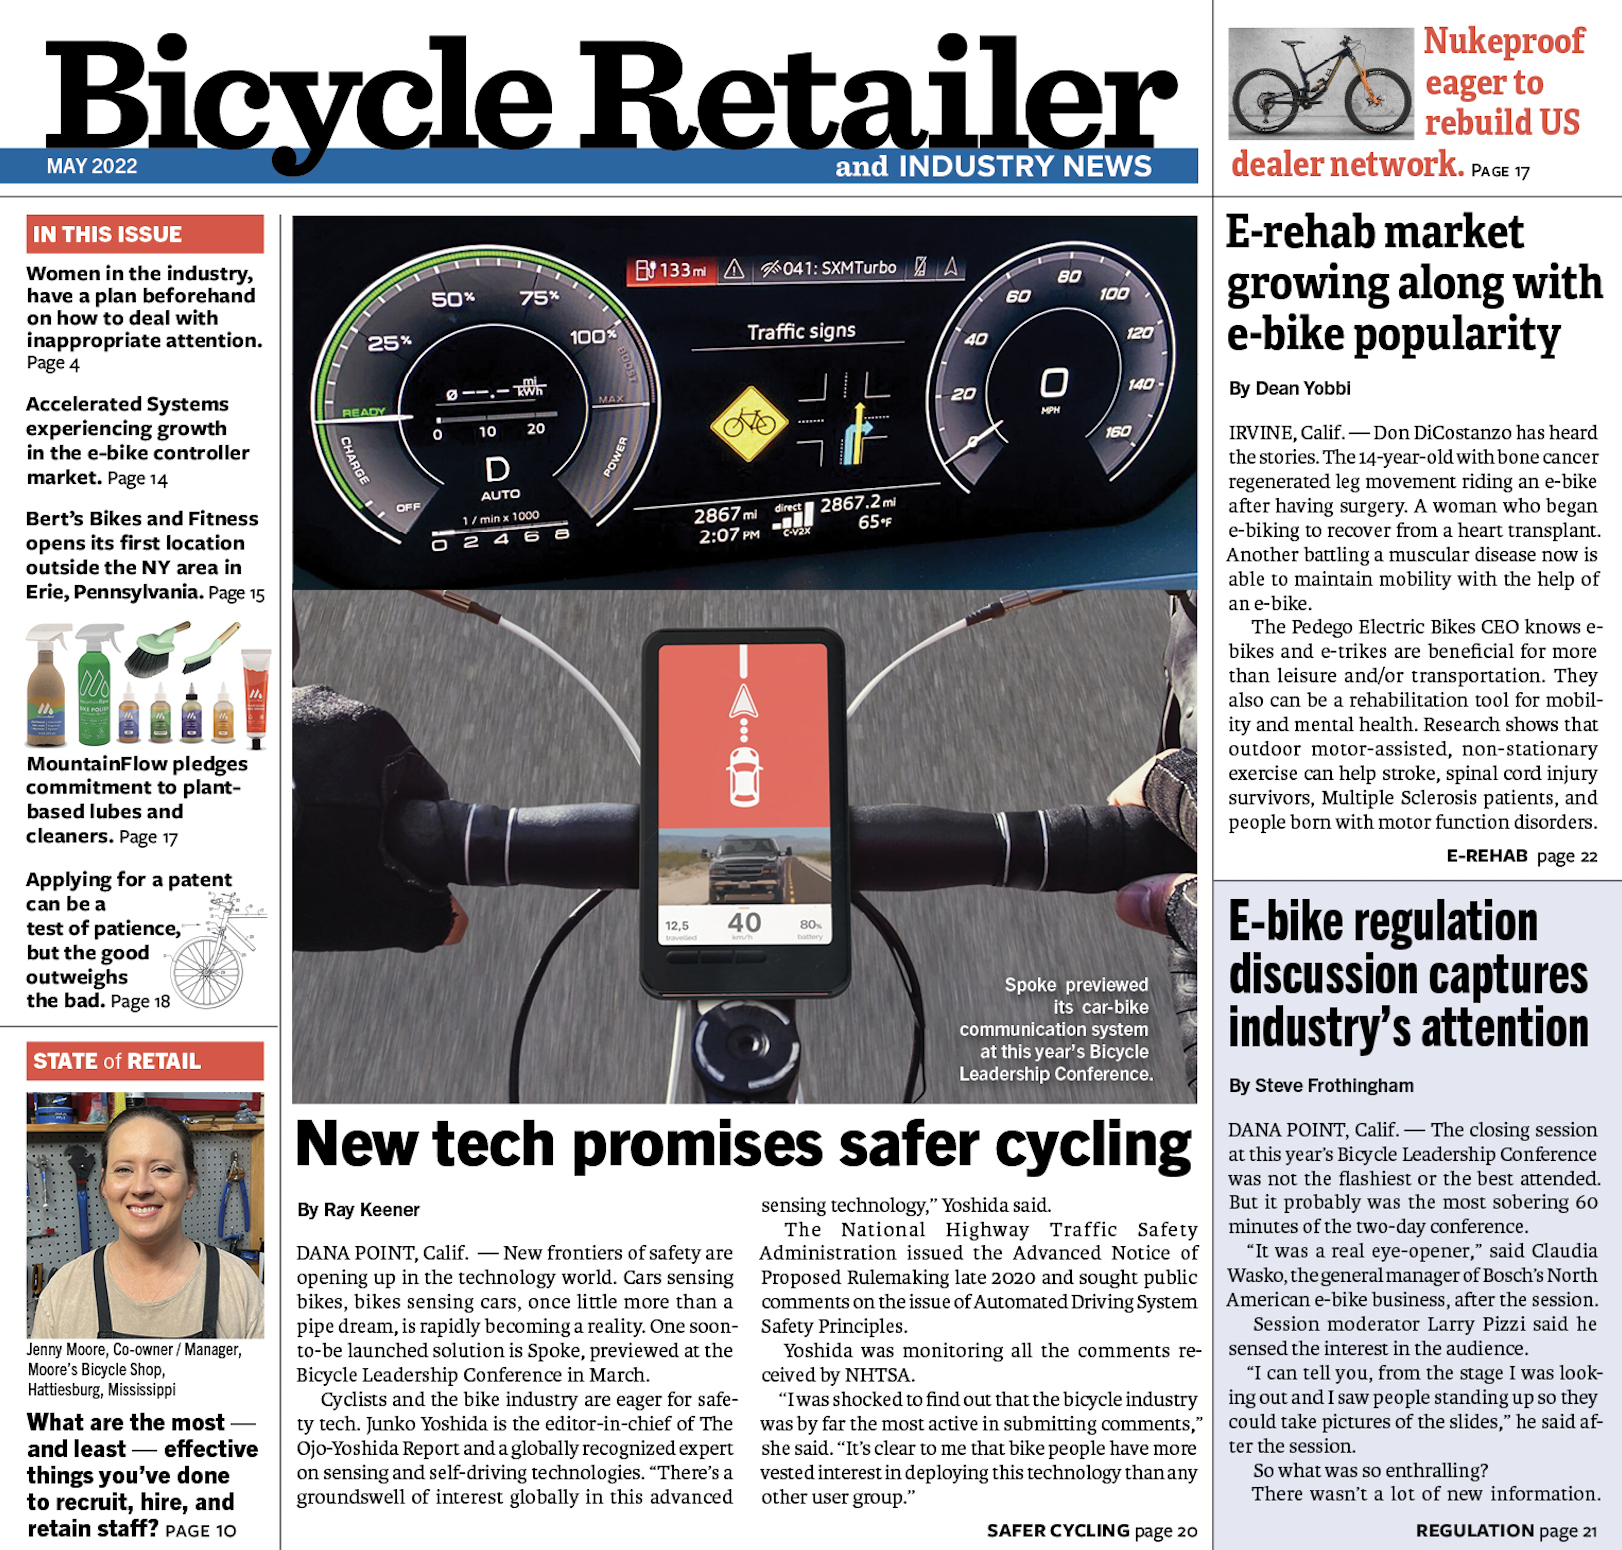 Una versión de este artículo apareció en la edición de mayo de Bicycle Retailer & Industry News.